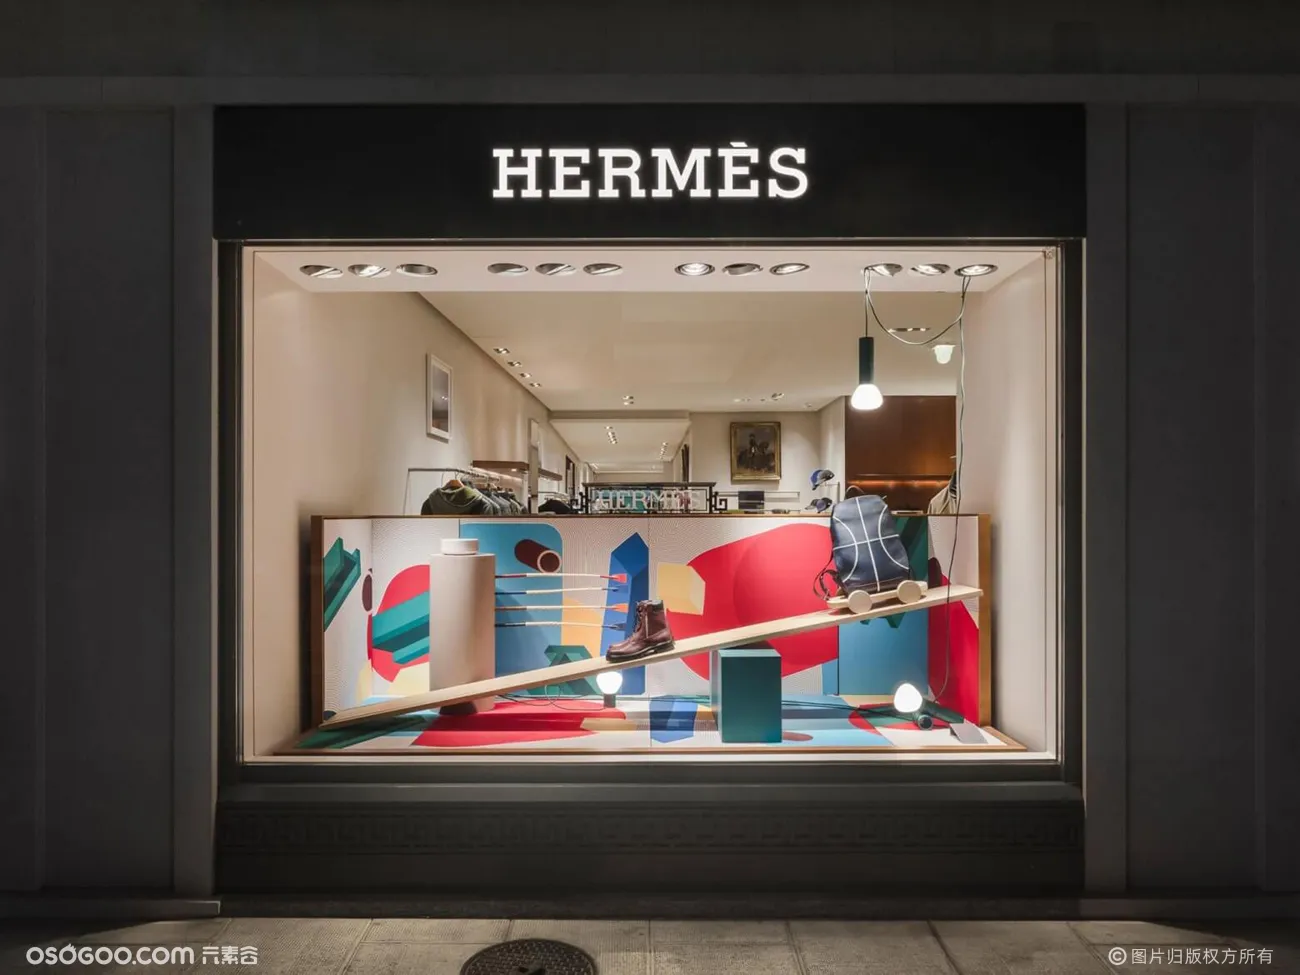 Hermès|2018橱窗